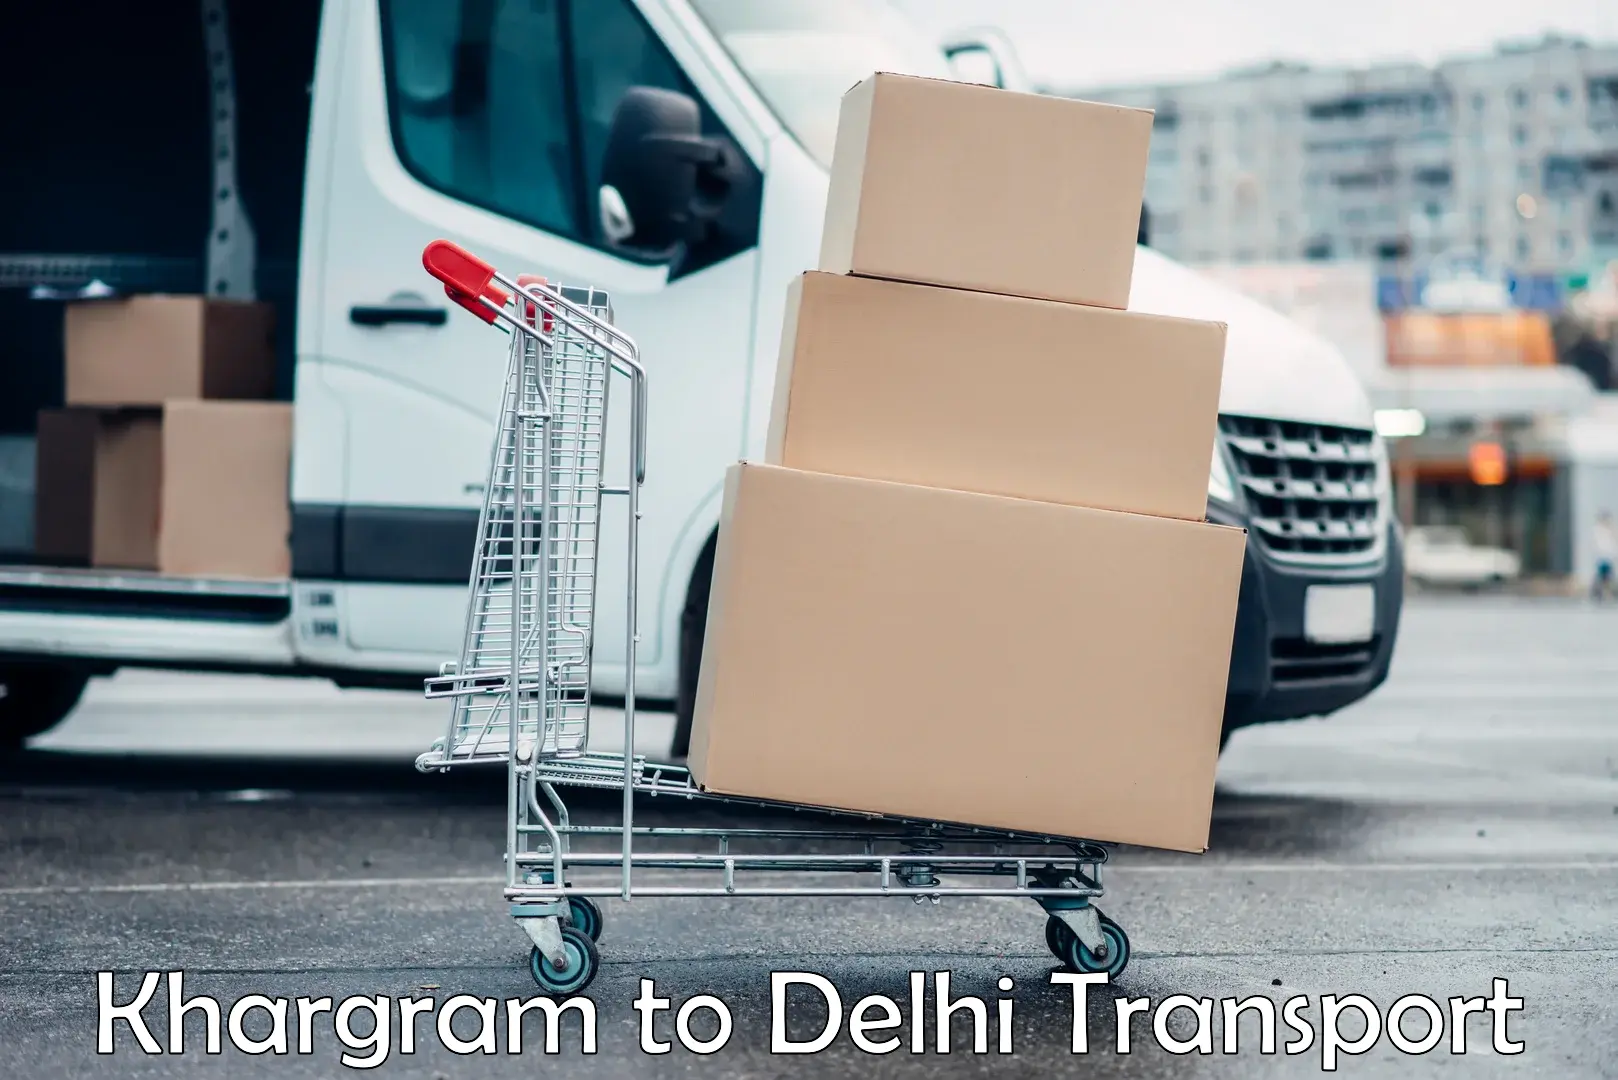 Online transport service Khargram to NCR